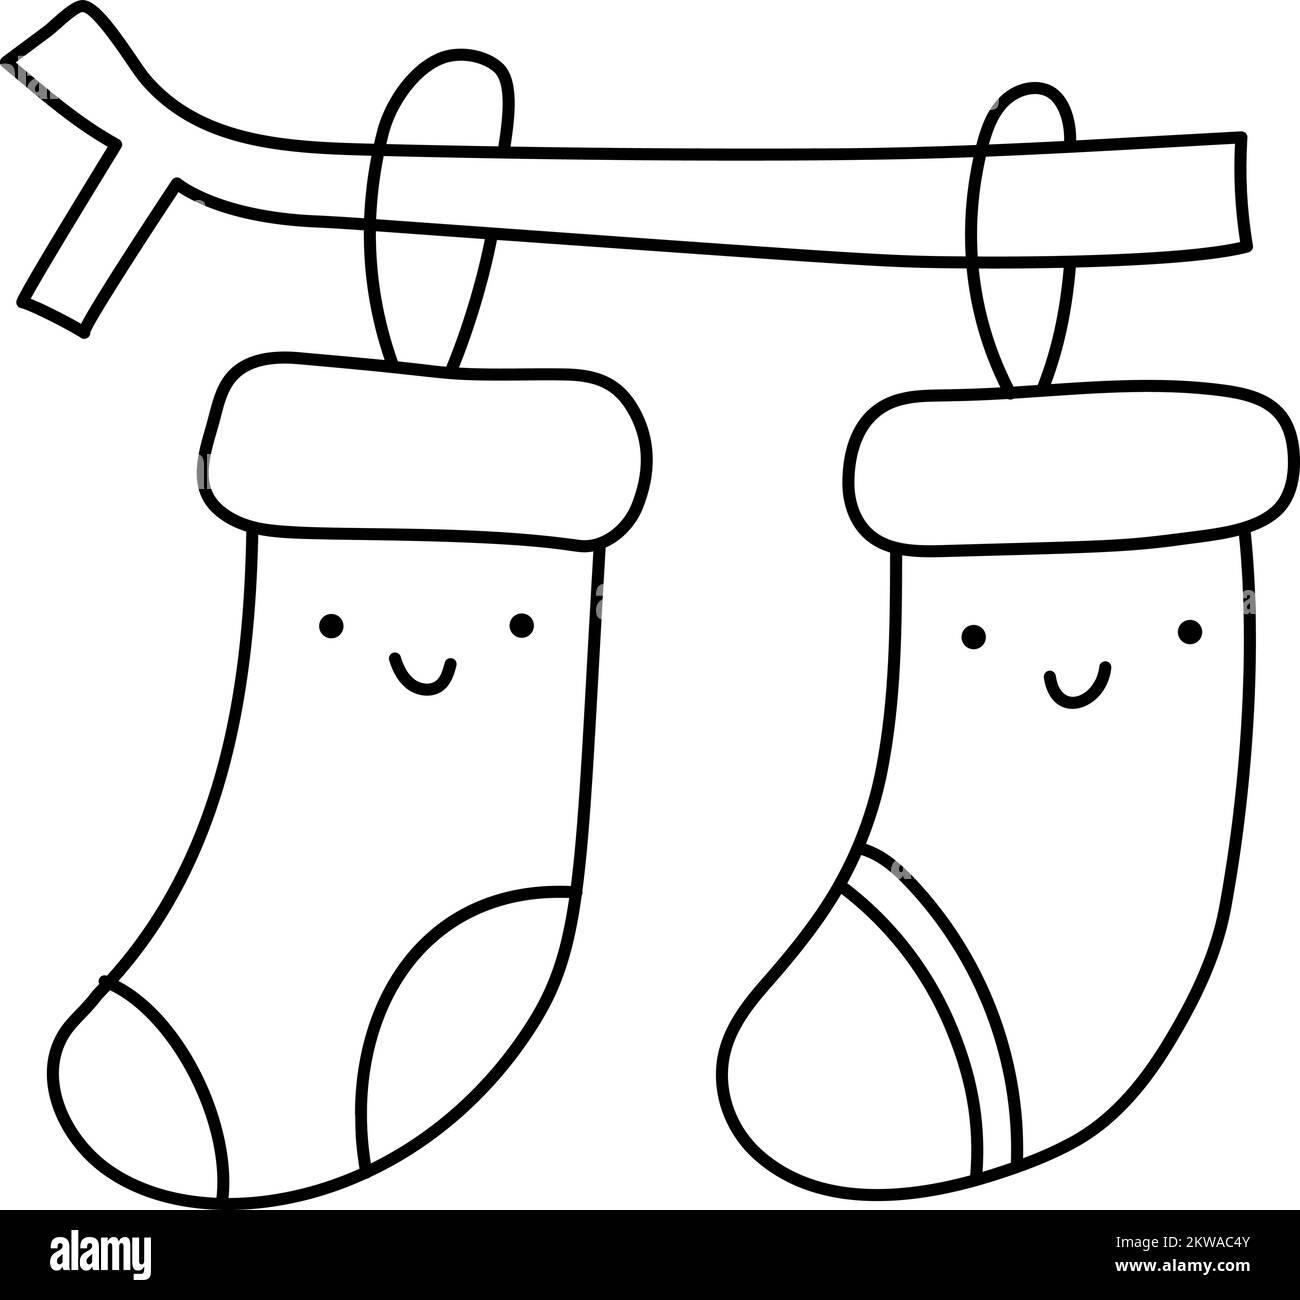 Scénario Noël illustration couple de chaussettes chaudes tricotées heureux smiling ligne. Jolis éléments à motifs pour un motif hivernal. Confort et chaleur Illustration de Vecteur